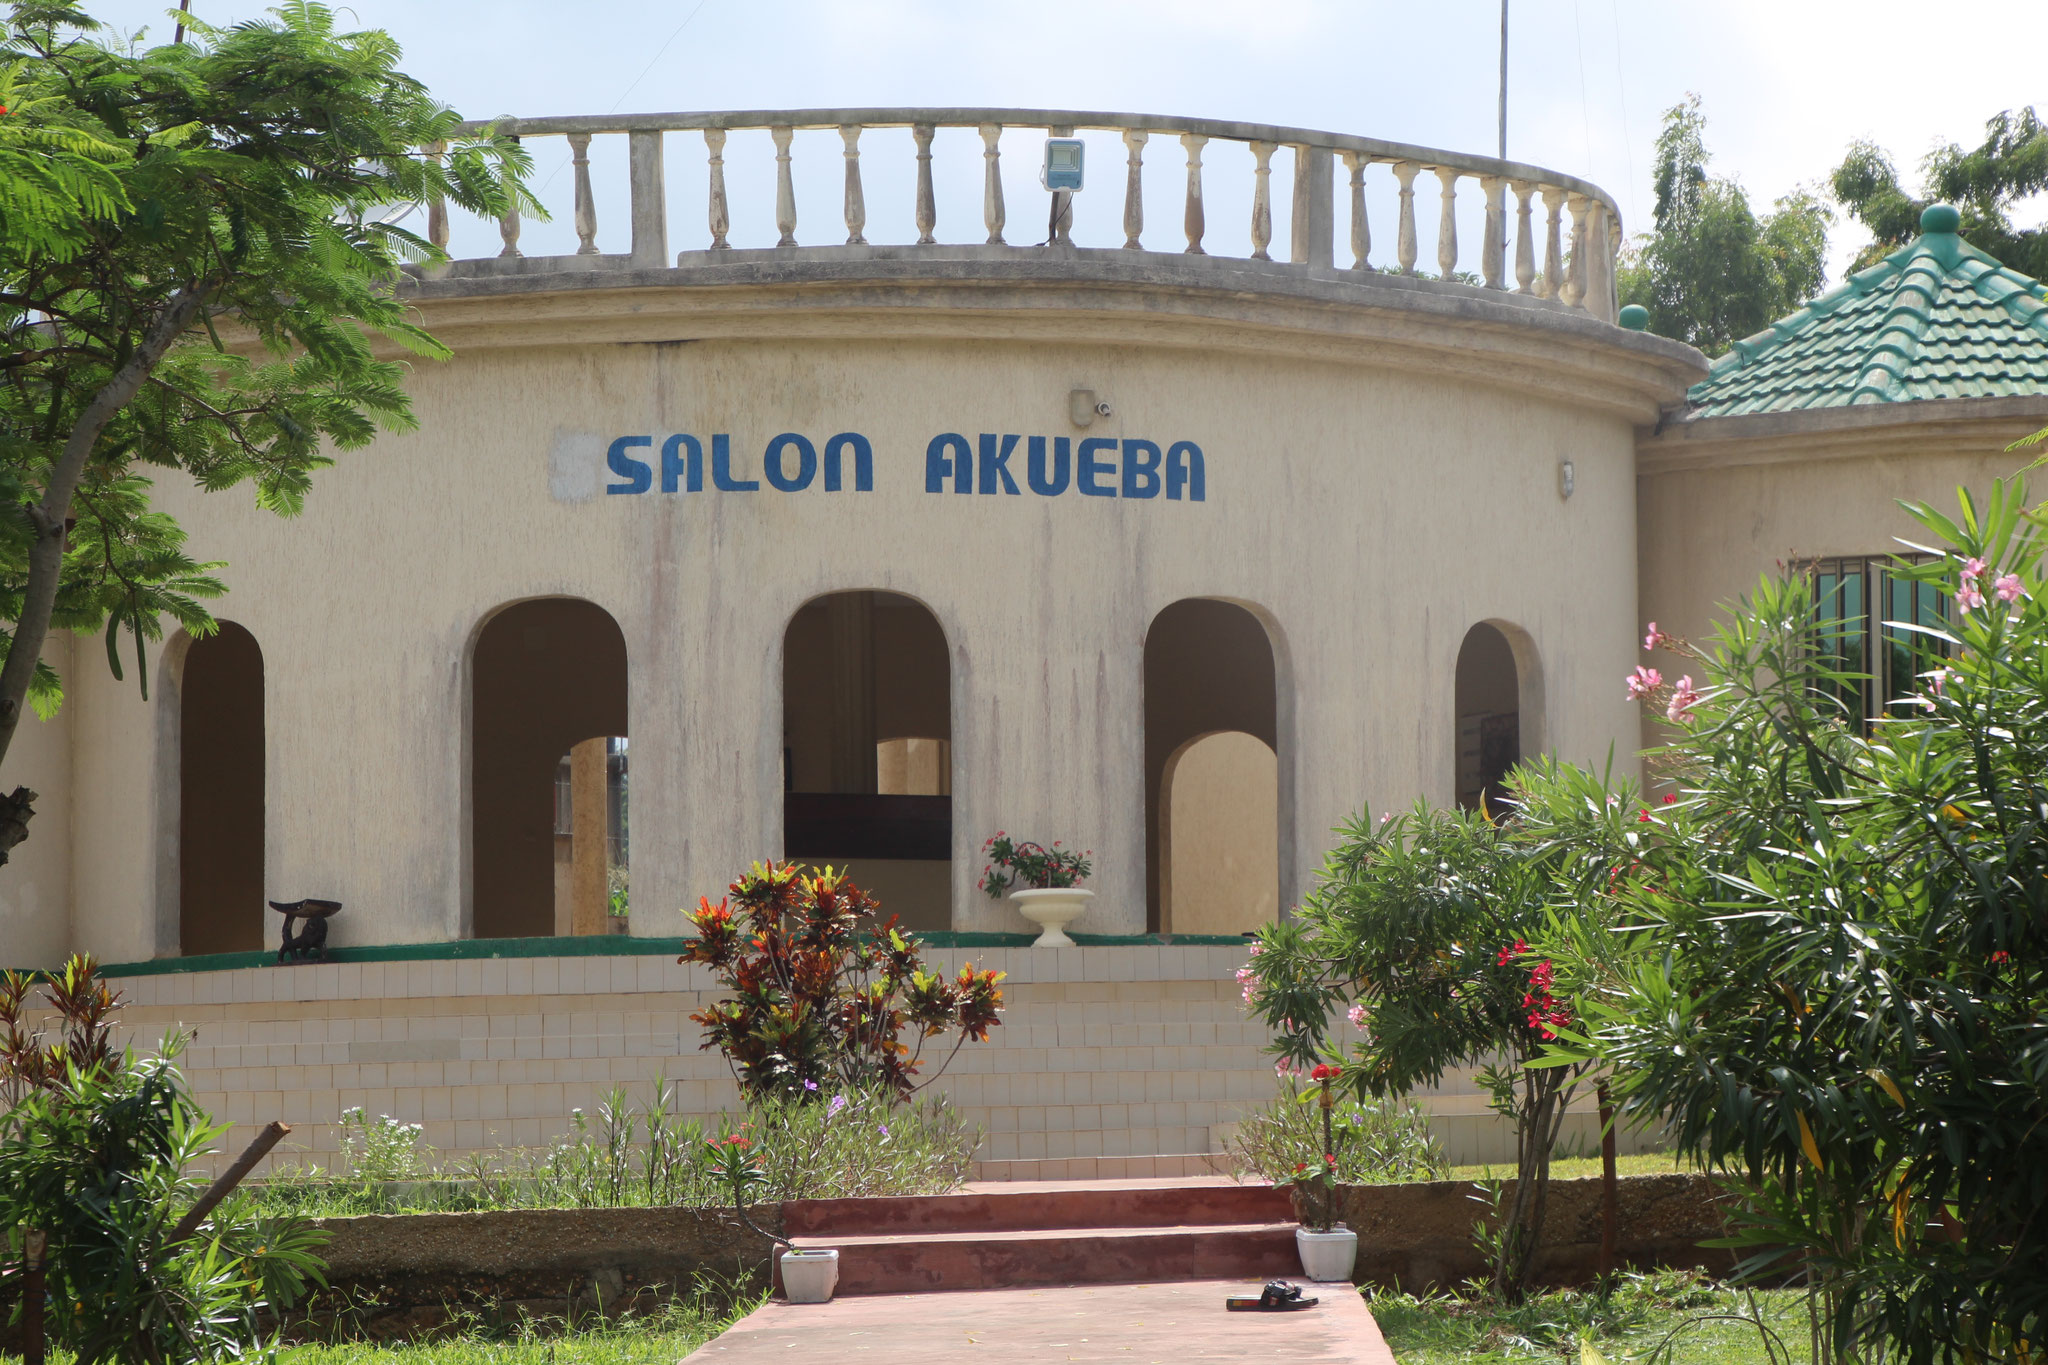 Salon Akueba.